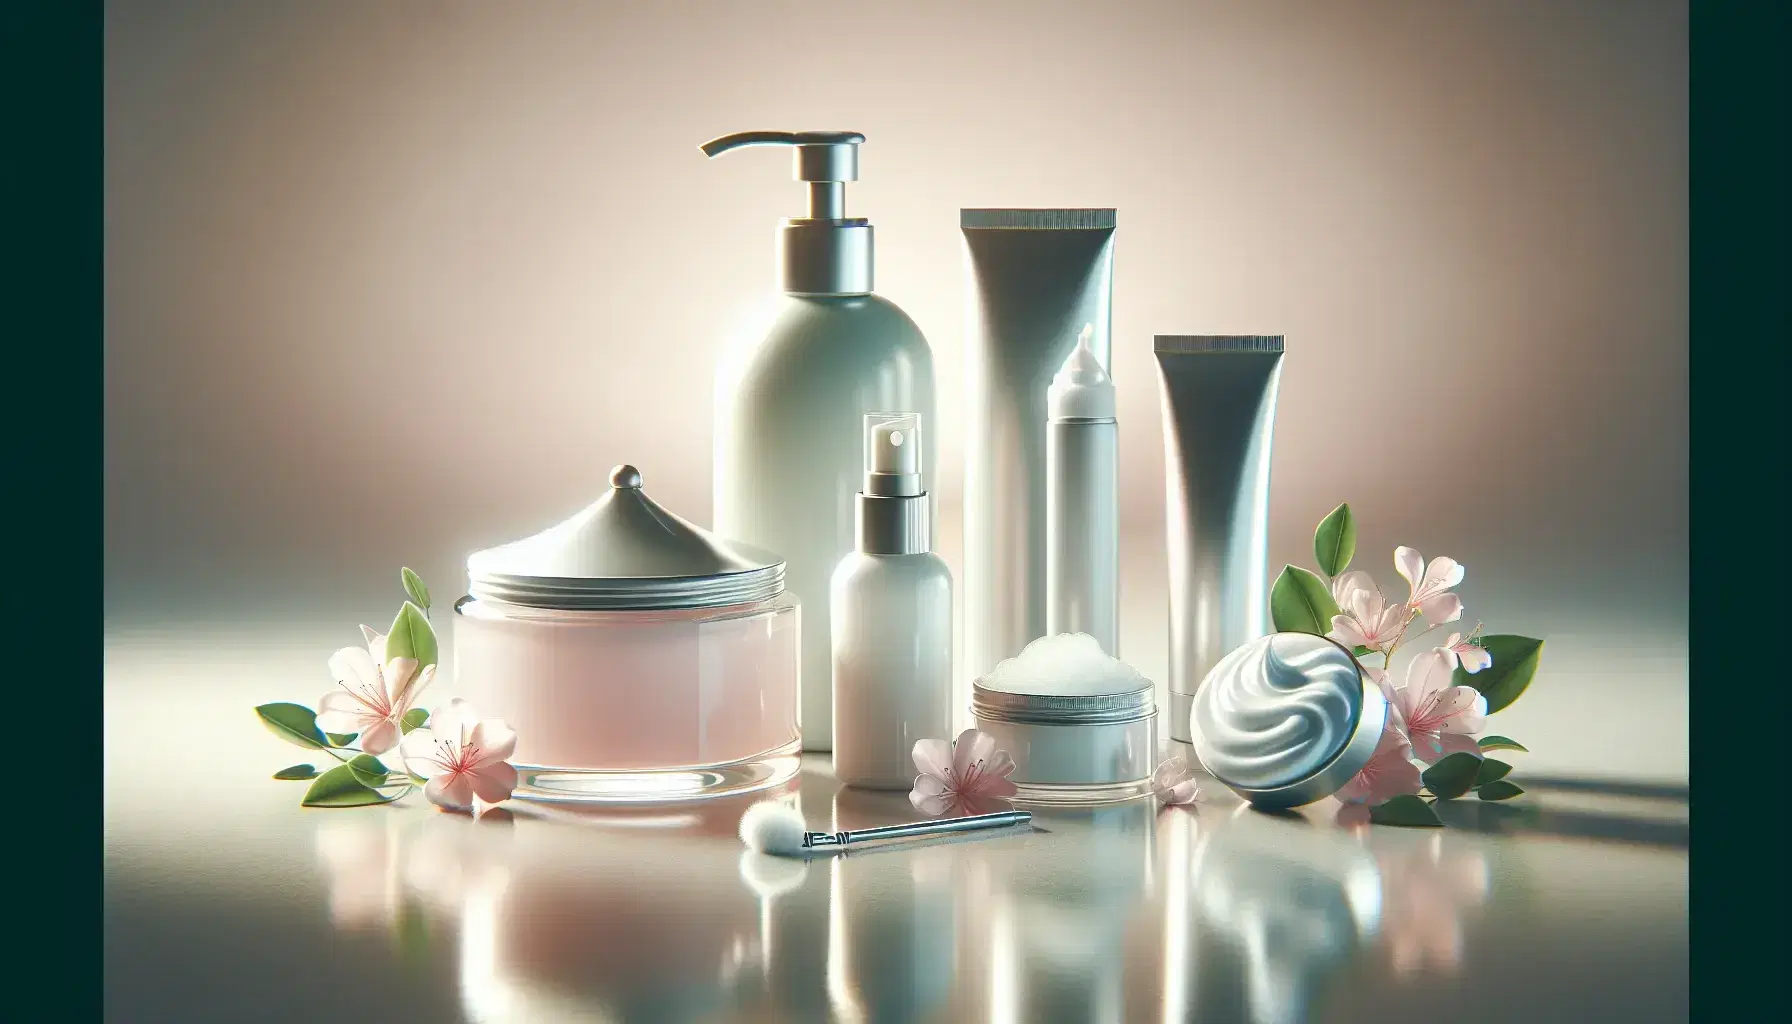 Productos cosméticos en tonos suaves con flores, incluyendo un frasco de loción rosada, tubo de crema, spray metálico y espuma en envase blanco sobre superficie clara.